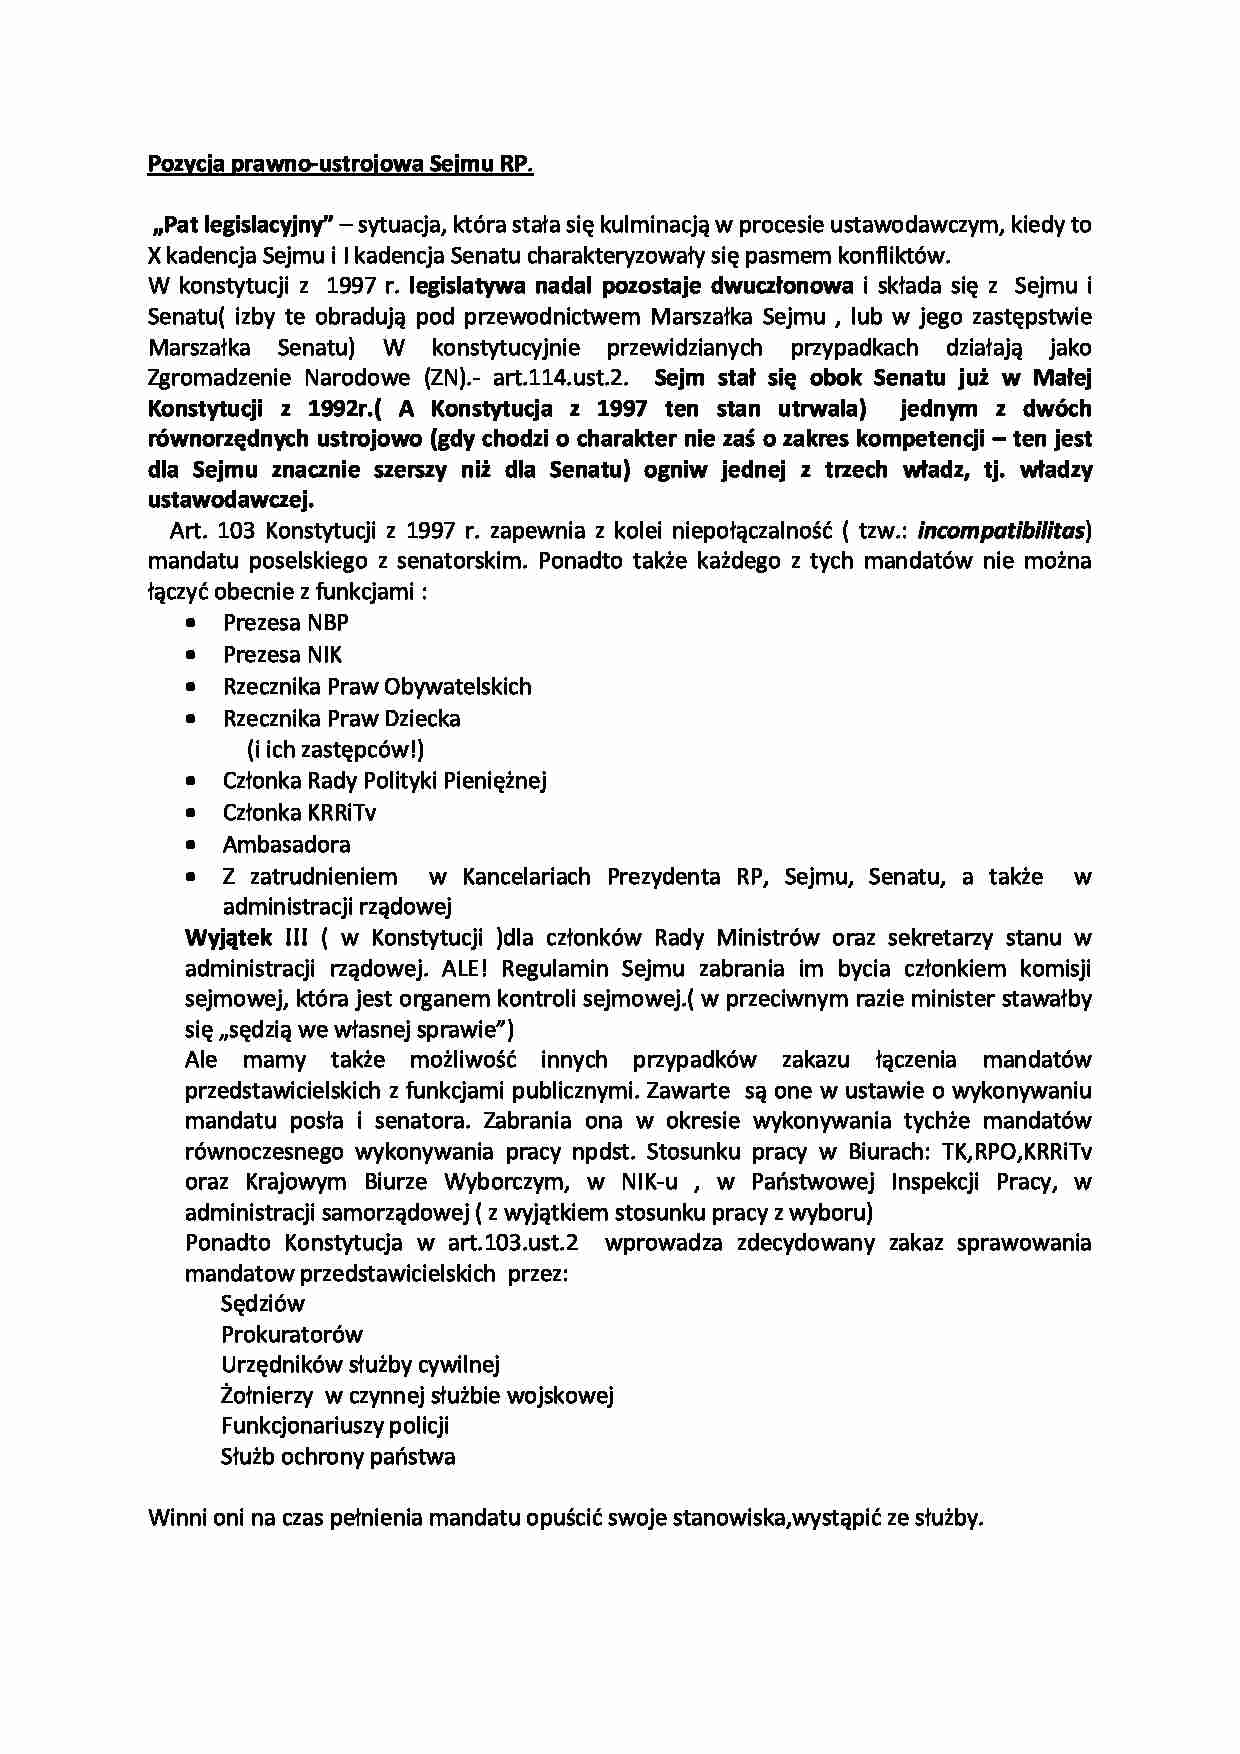 Pozycja prawno-ustrojowa Sejmu RP - strona 1